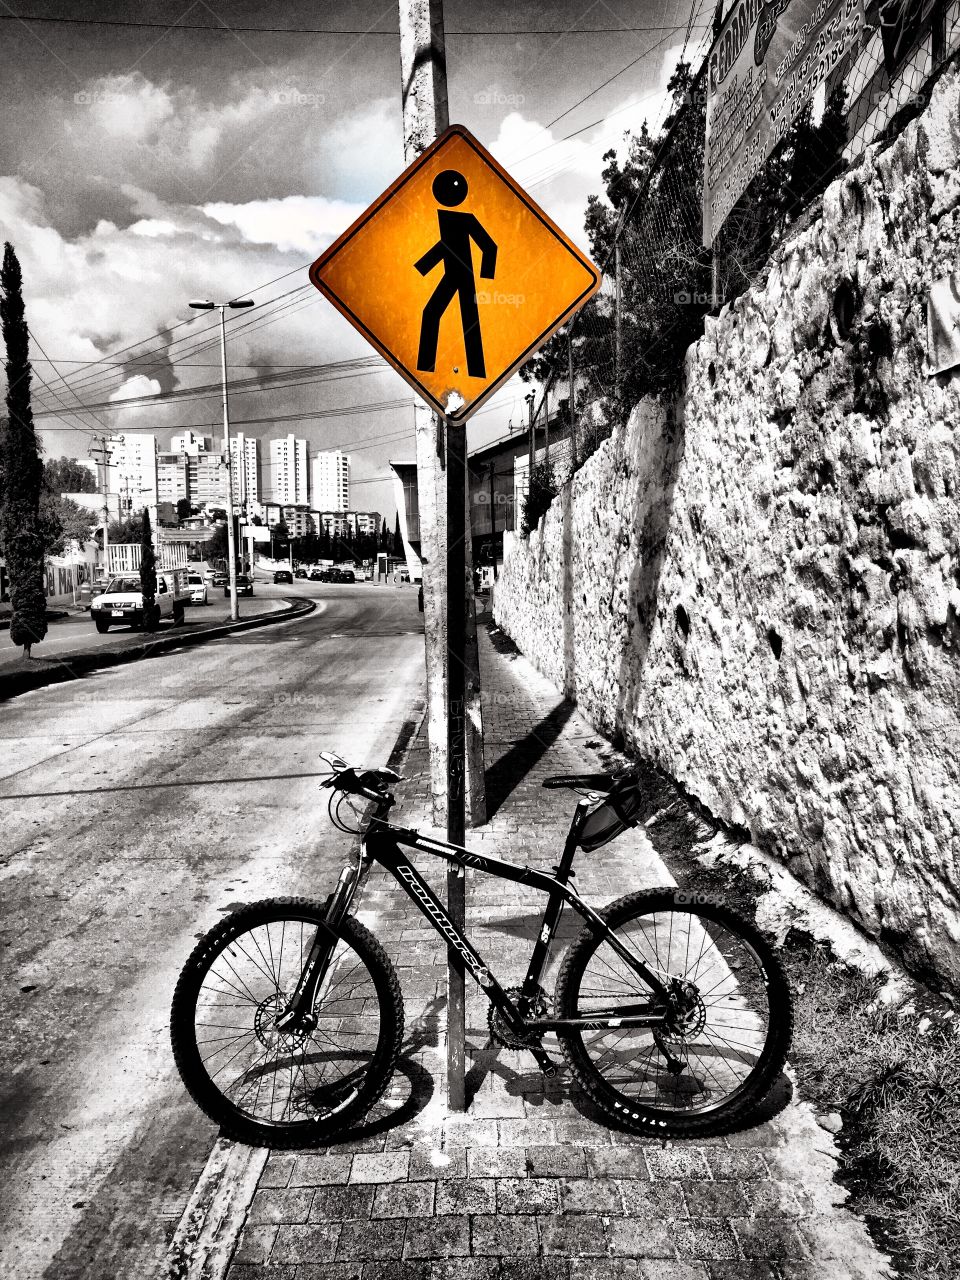 Stop walking, grab a bike